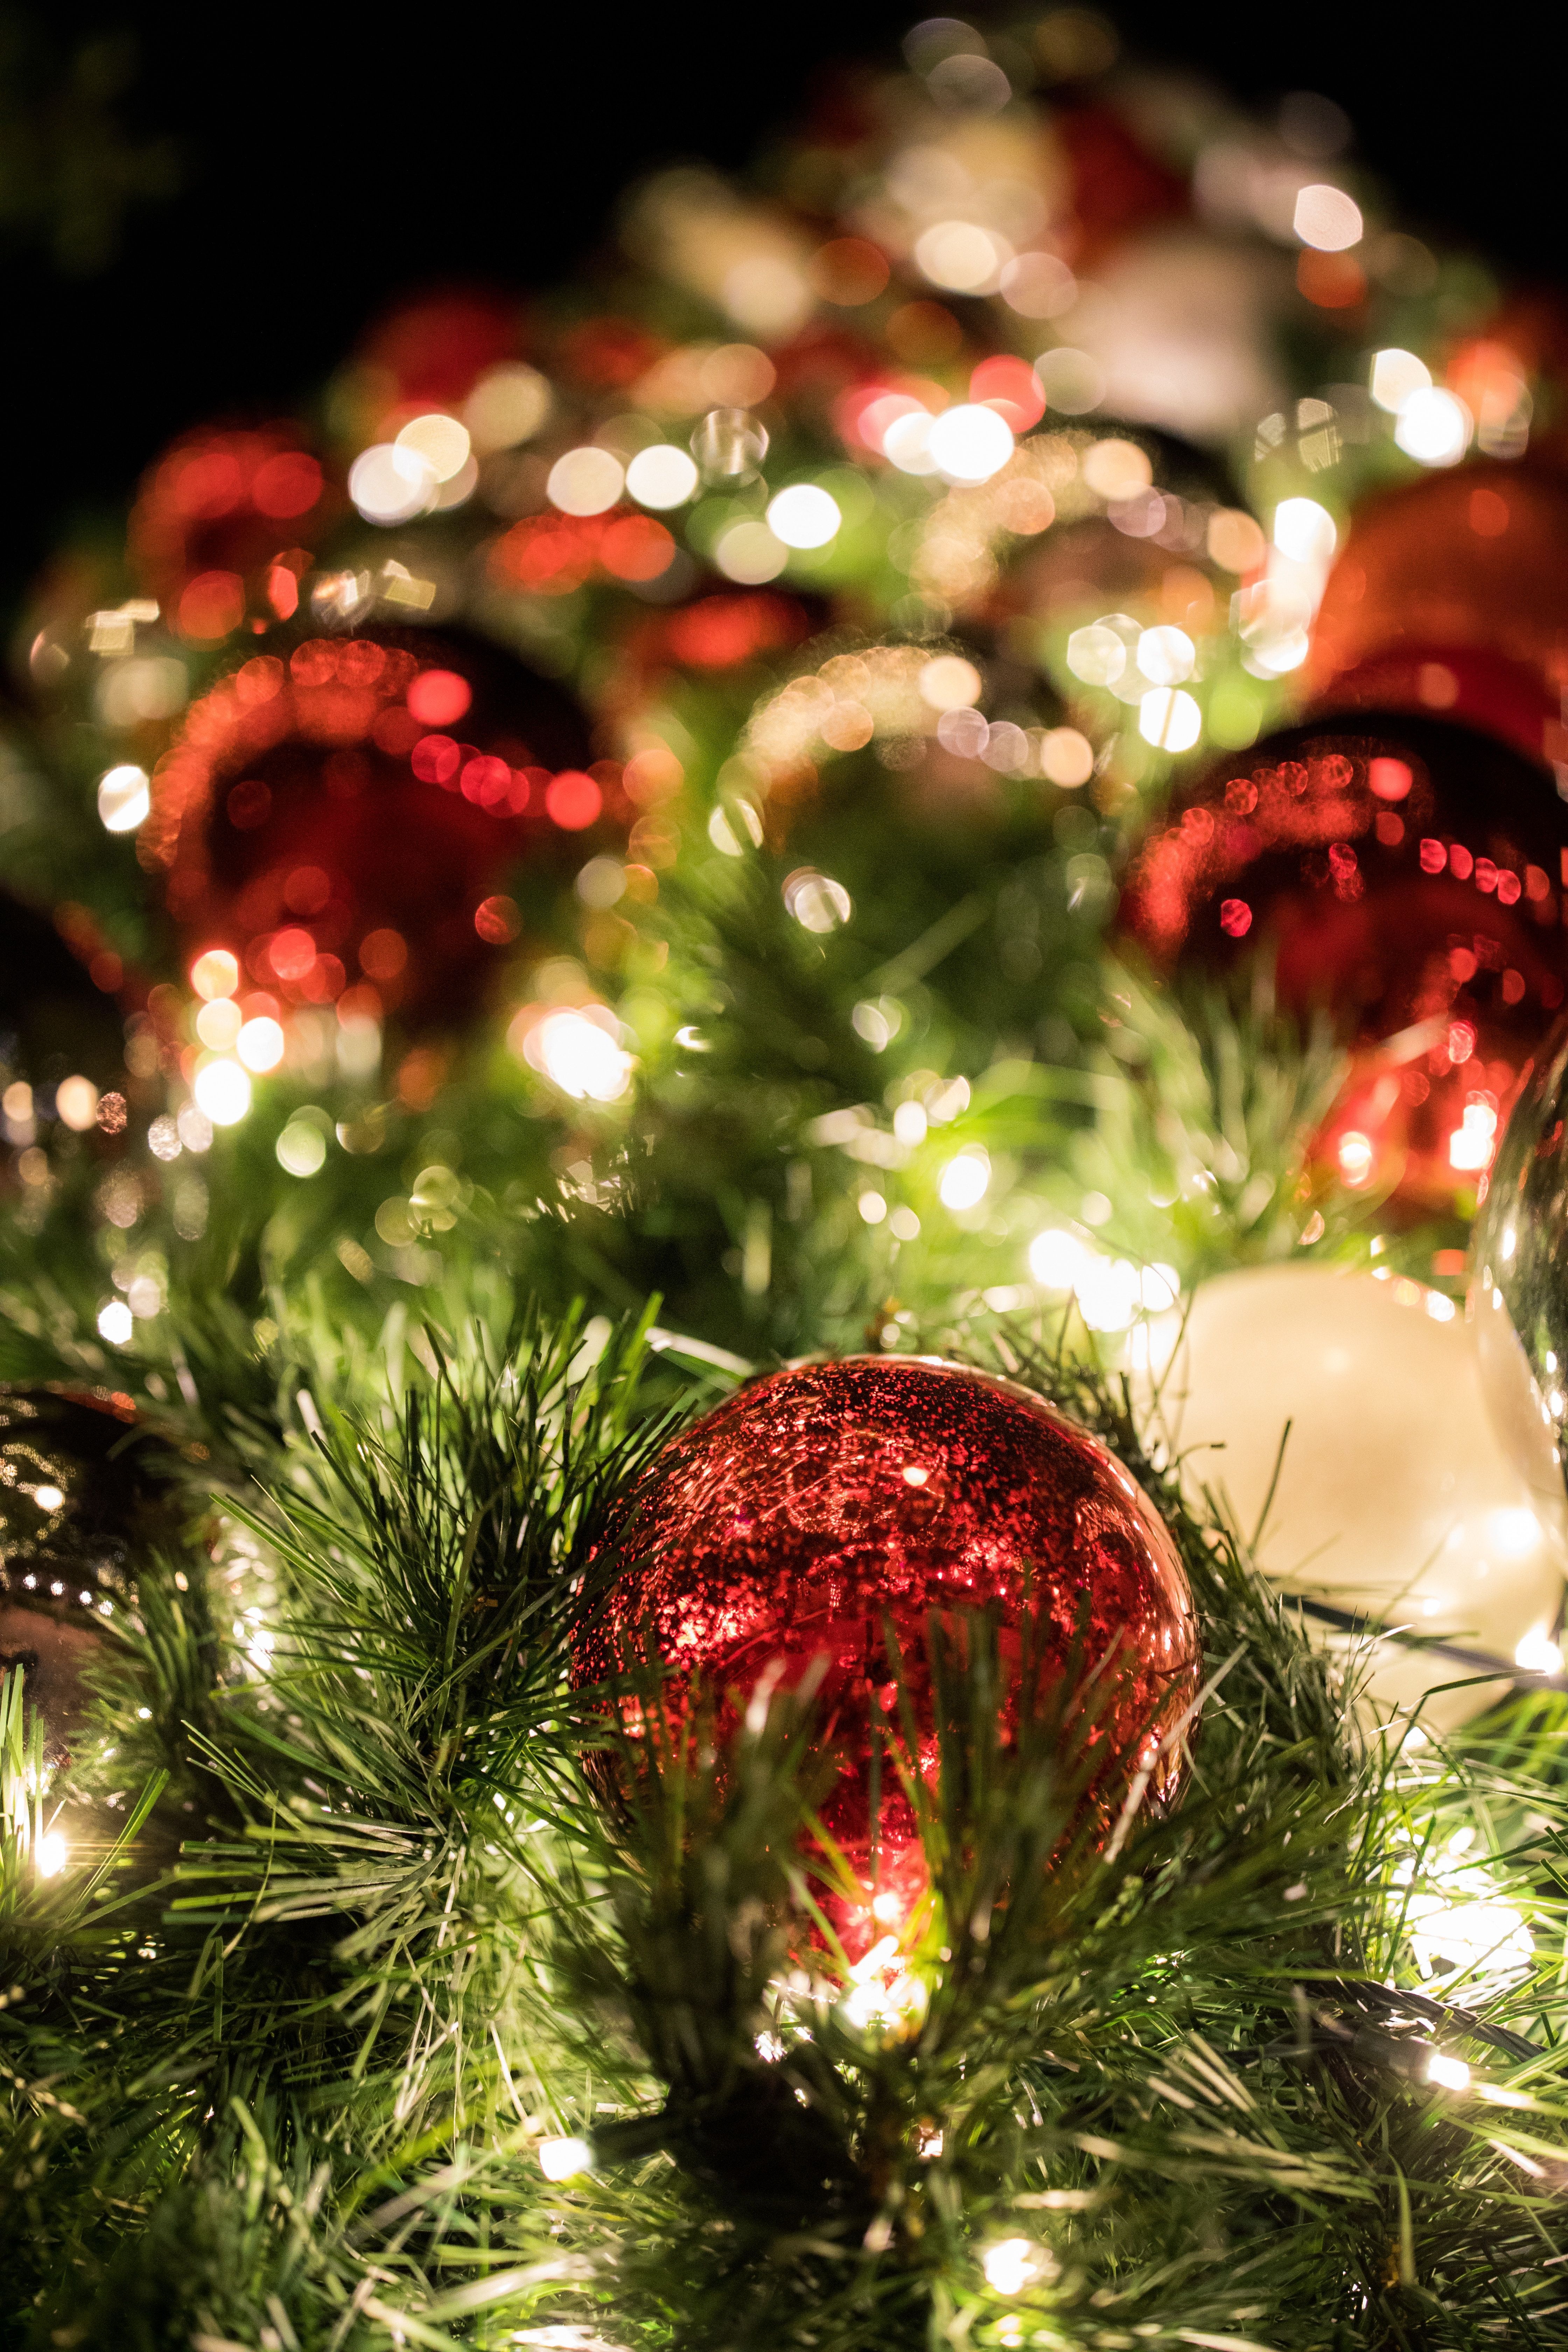  Weihnachtsbaum Hintergrundbild 4480x6720. Kostenlose Hintergrundbilder Rot Goldene Kugeln Auf Grünem Weihnachtsbaum, Bilder Für Ihren Desktop Und Fotos